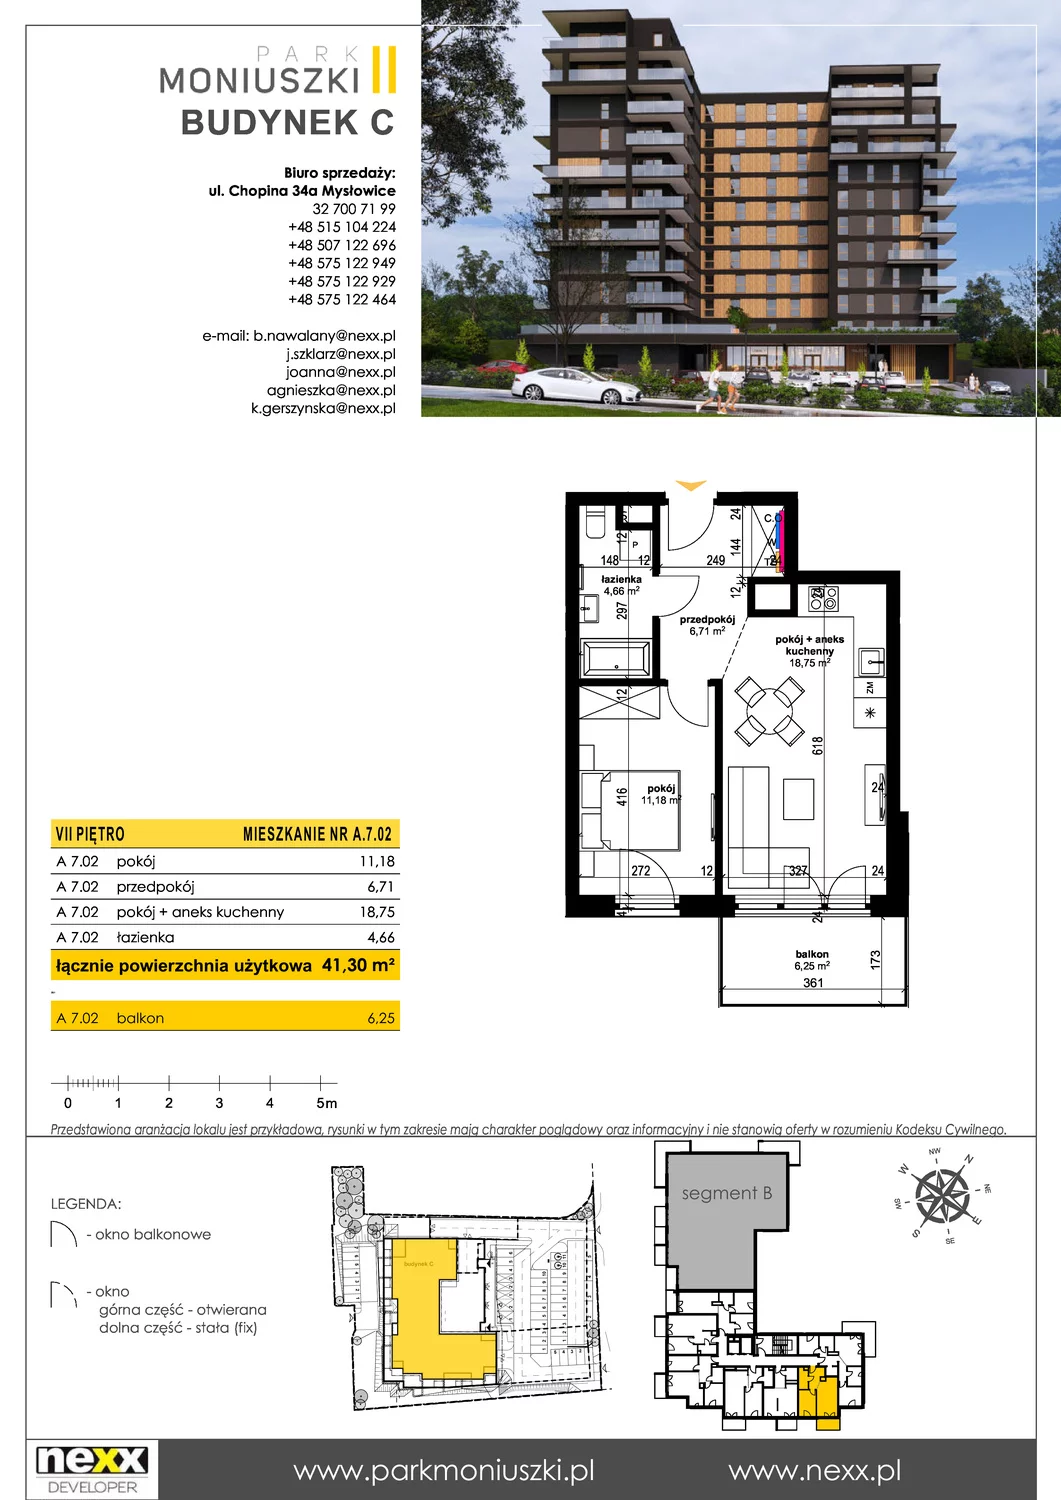 Mieszkanie 41,30 m², piętro 7, oferta nr A 7.02, Osiedle Park Moniuszki, Mysłowice, ul. Okrzei / Wielka Skotnica